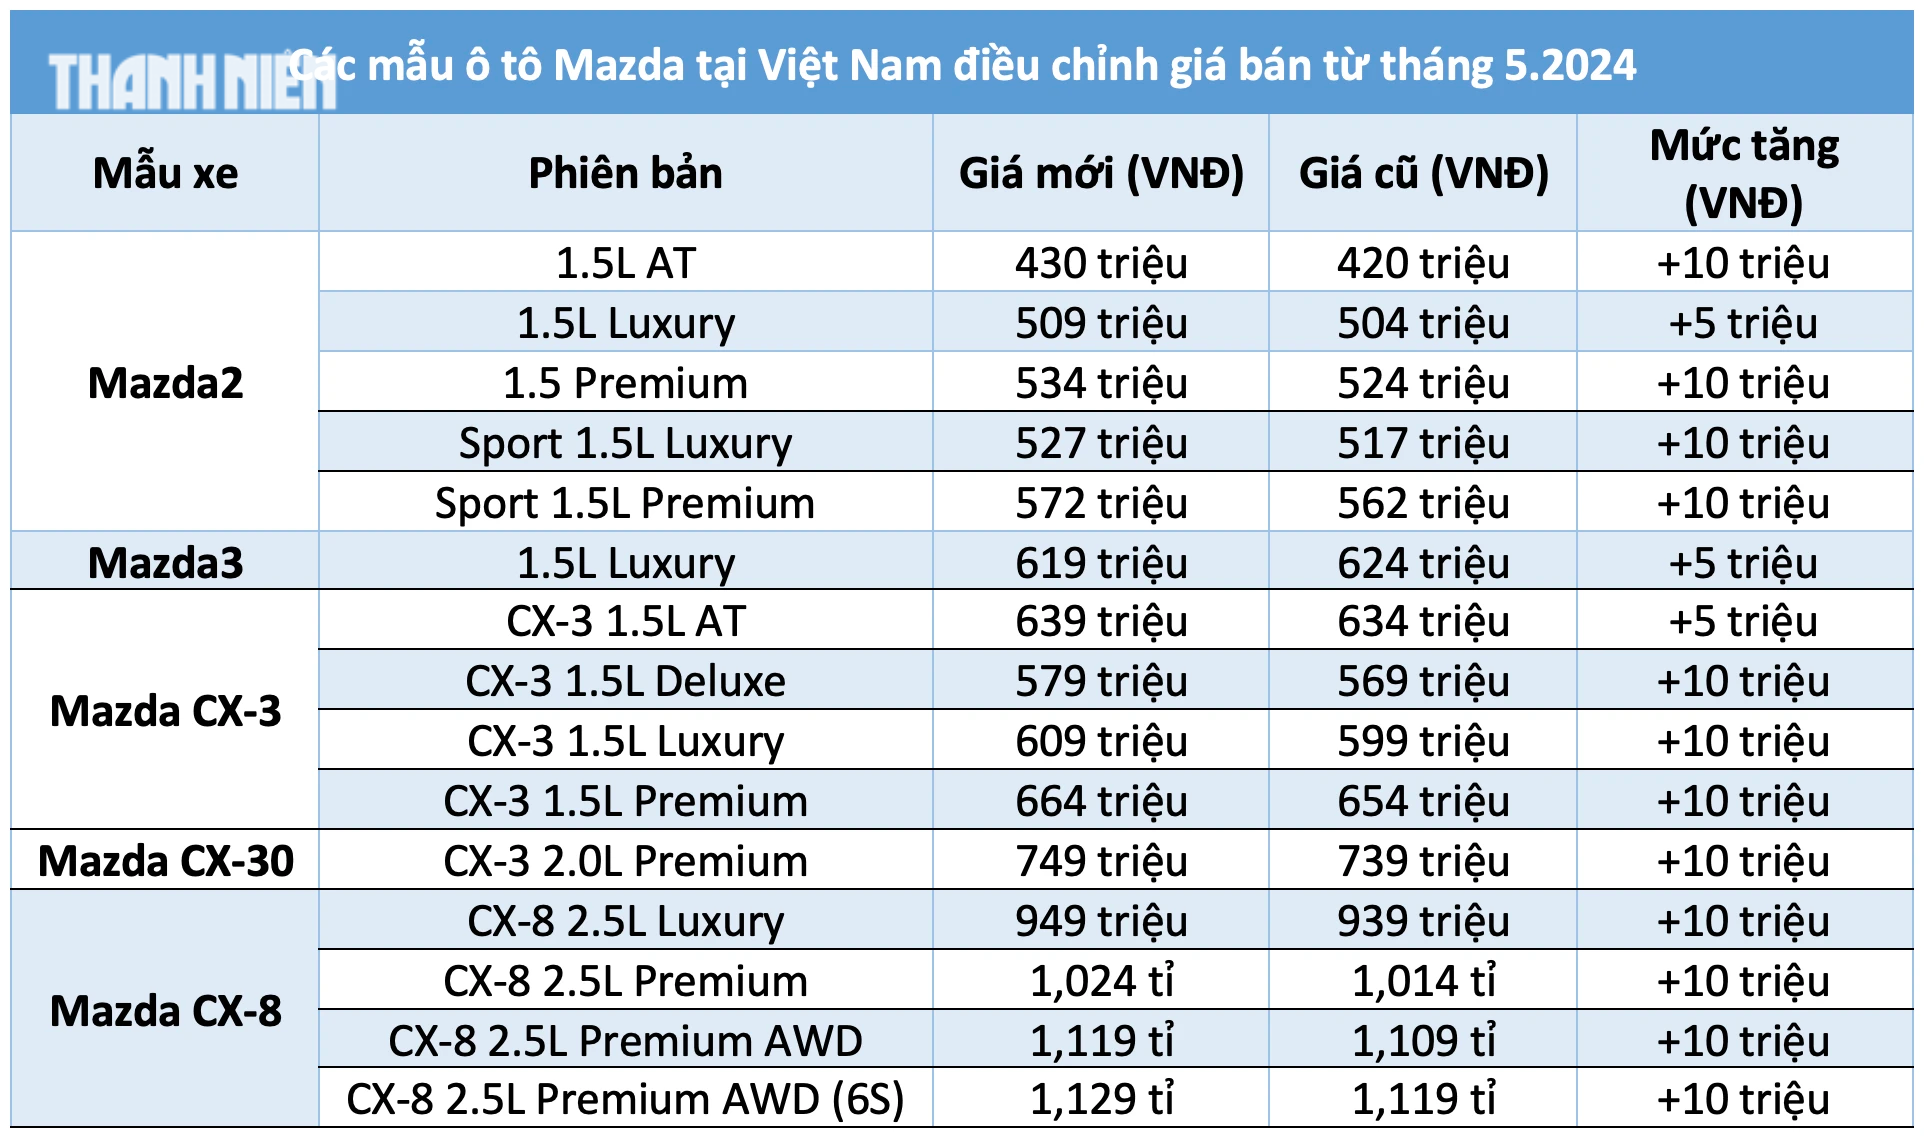 Giá bán các mẫu xe Mazda tại Việt Nam hiện nay